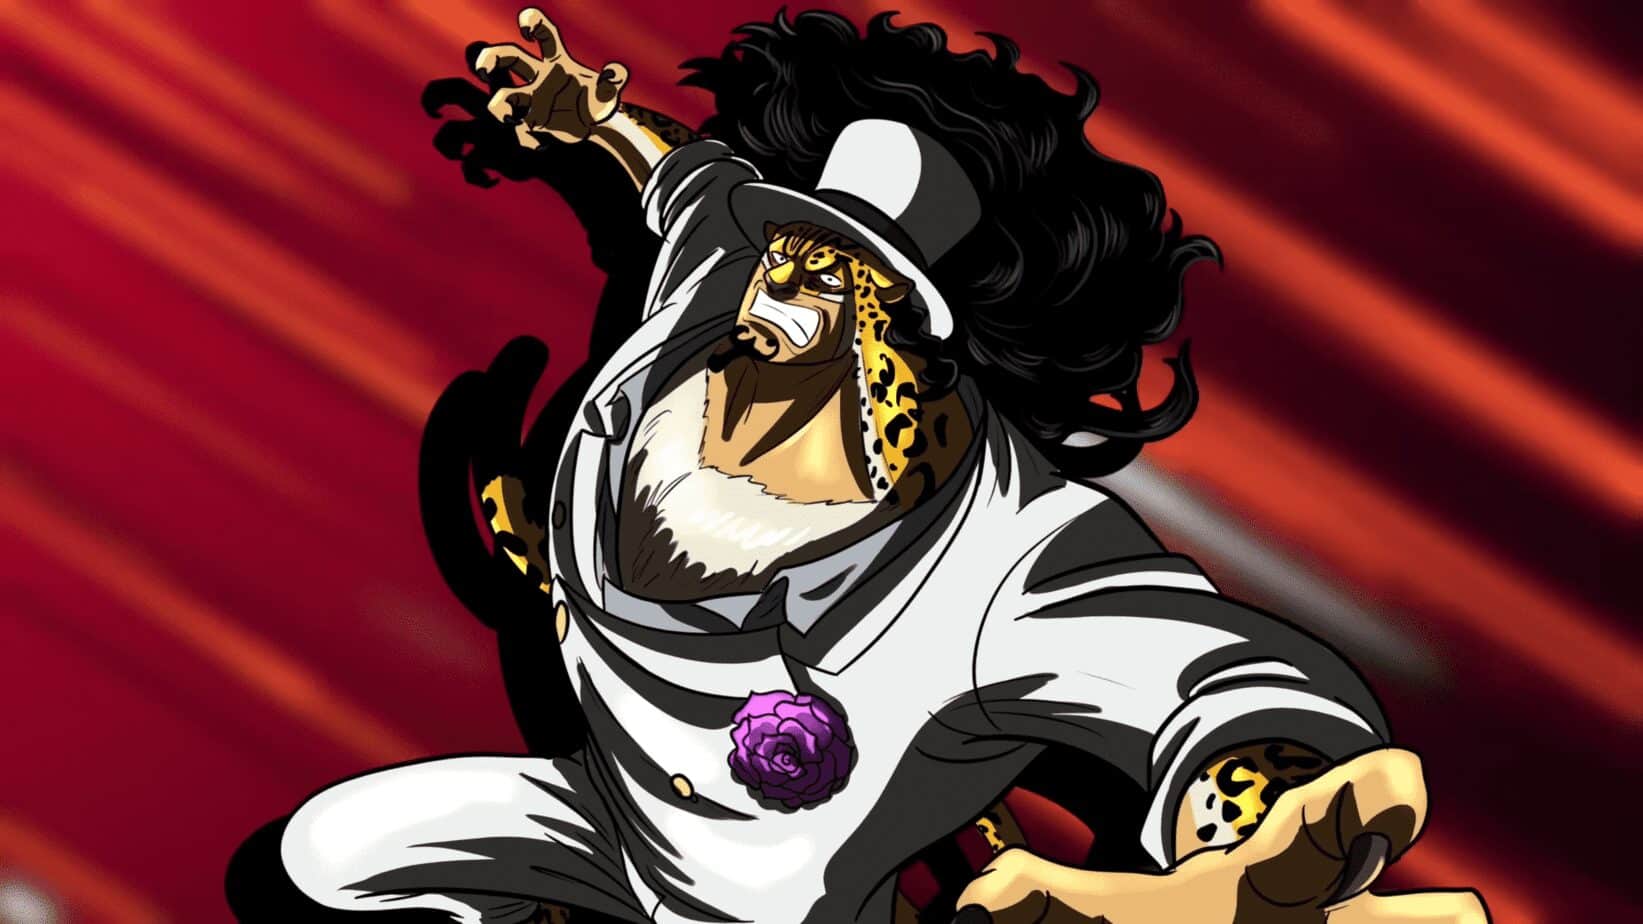 One Piece Chapitre 1069 Spoilers : Le nouveau pouvoir de Rob Lucci pour combattre Luffy 4 One piece chapitre 1069 Lucci